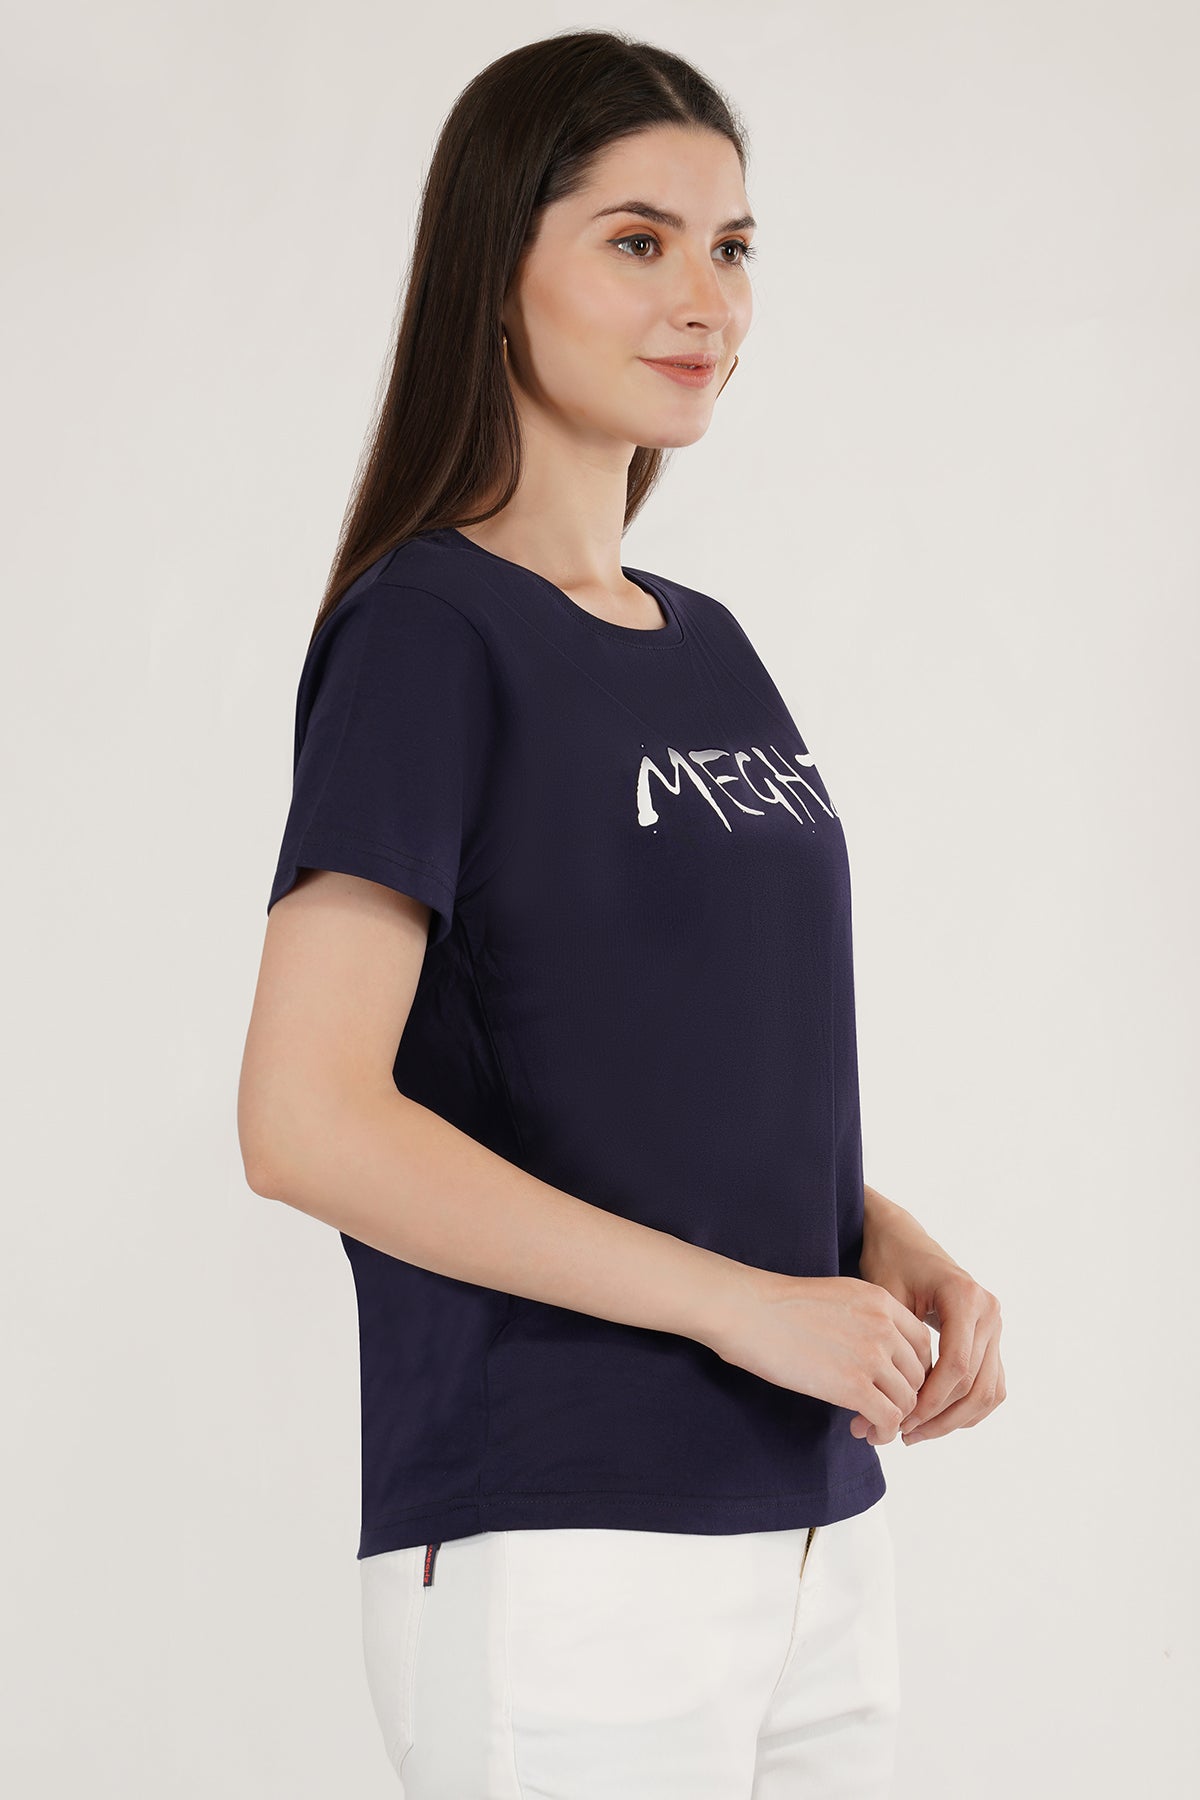 Women Round Neck Navy Blue T-Shirt